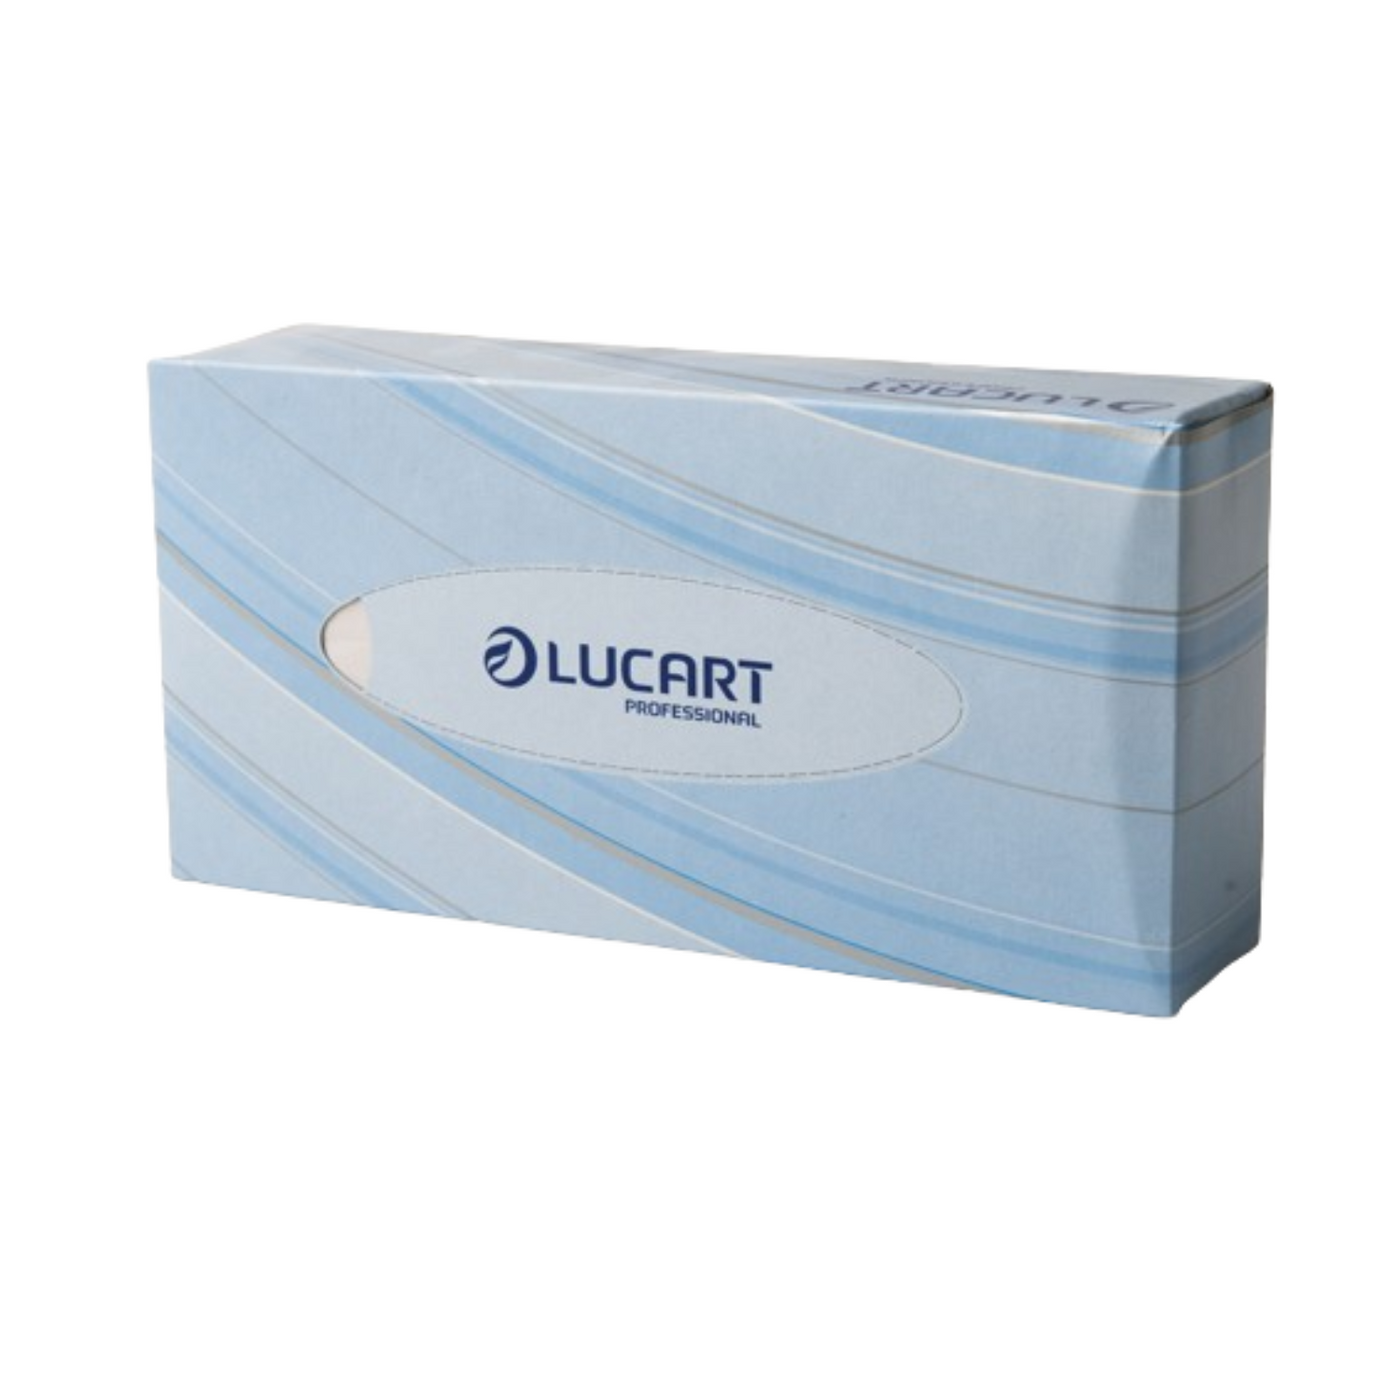 Lucart Pop Up Facial Tissues 100 Sheets Pk36 (9319603896630)